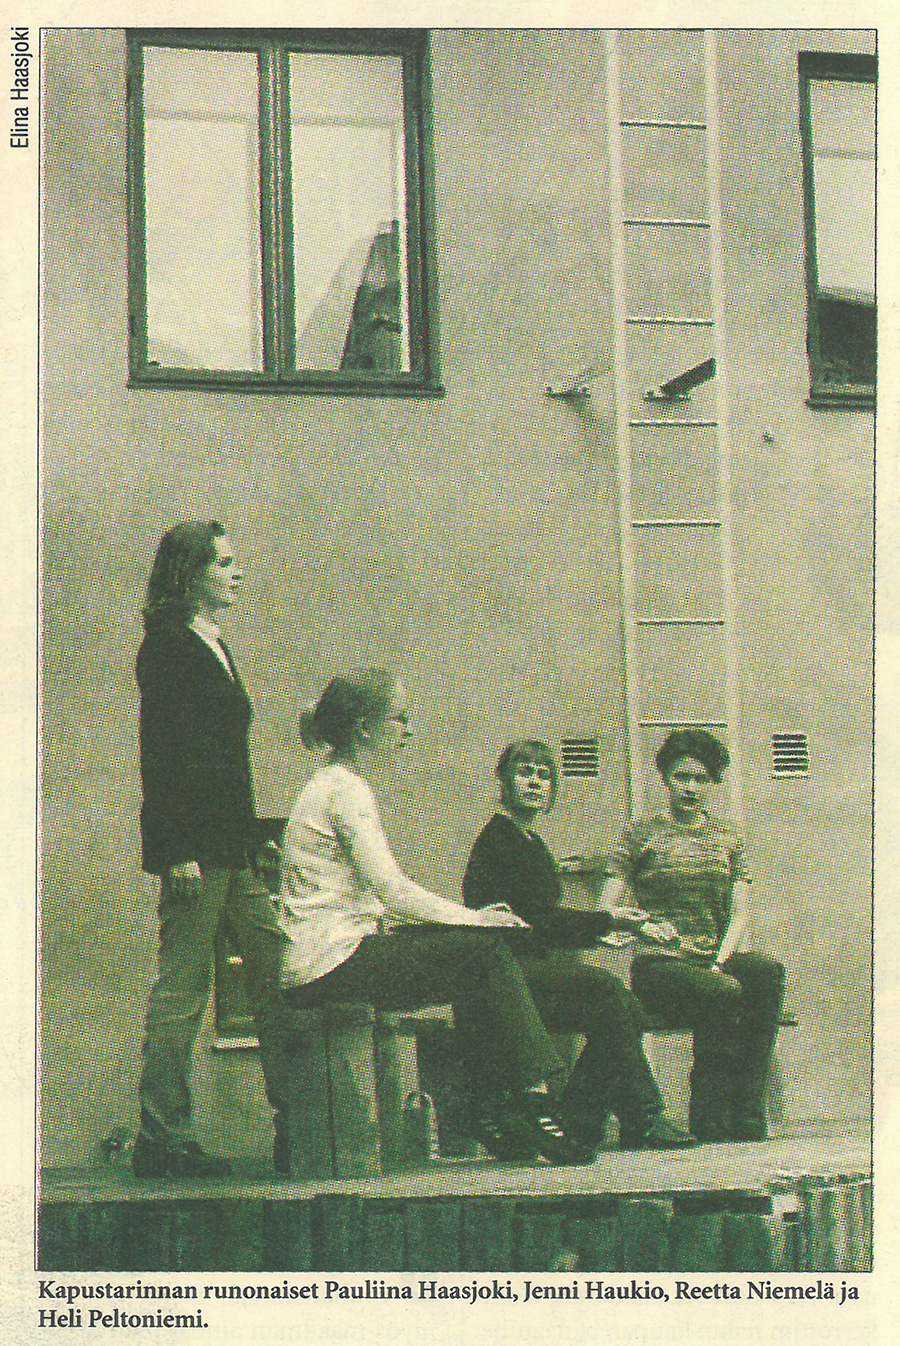 Neljä henkilöä istuu talon edustalla.